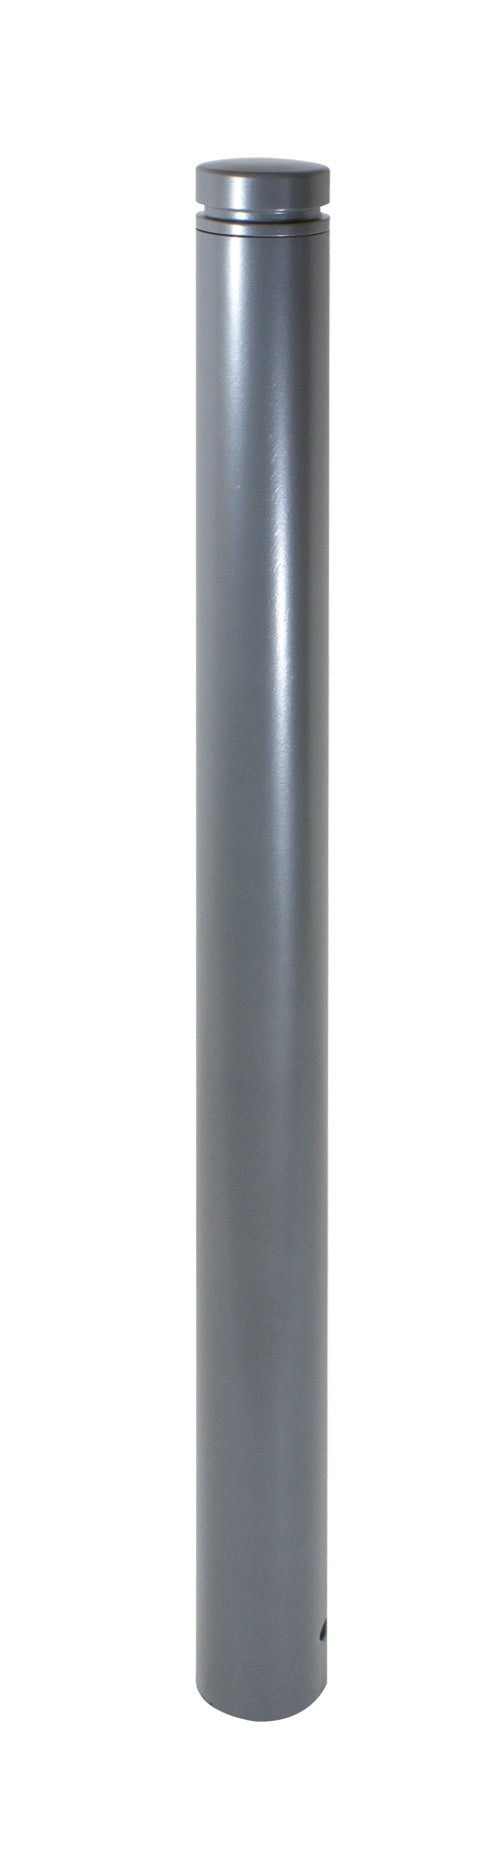 Absperr-Stilpfosten Serie 4092: RAL 7016 mit Alukopf und Ziernut